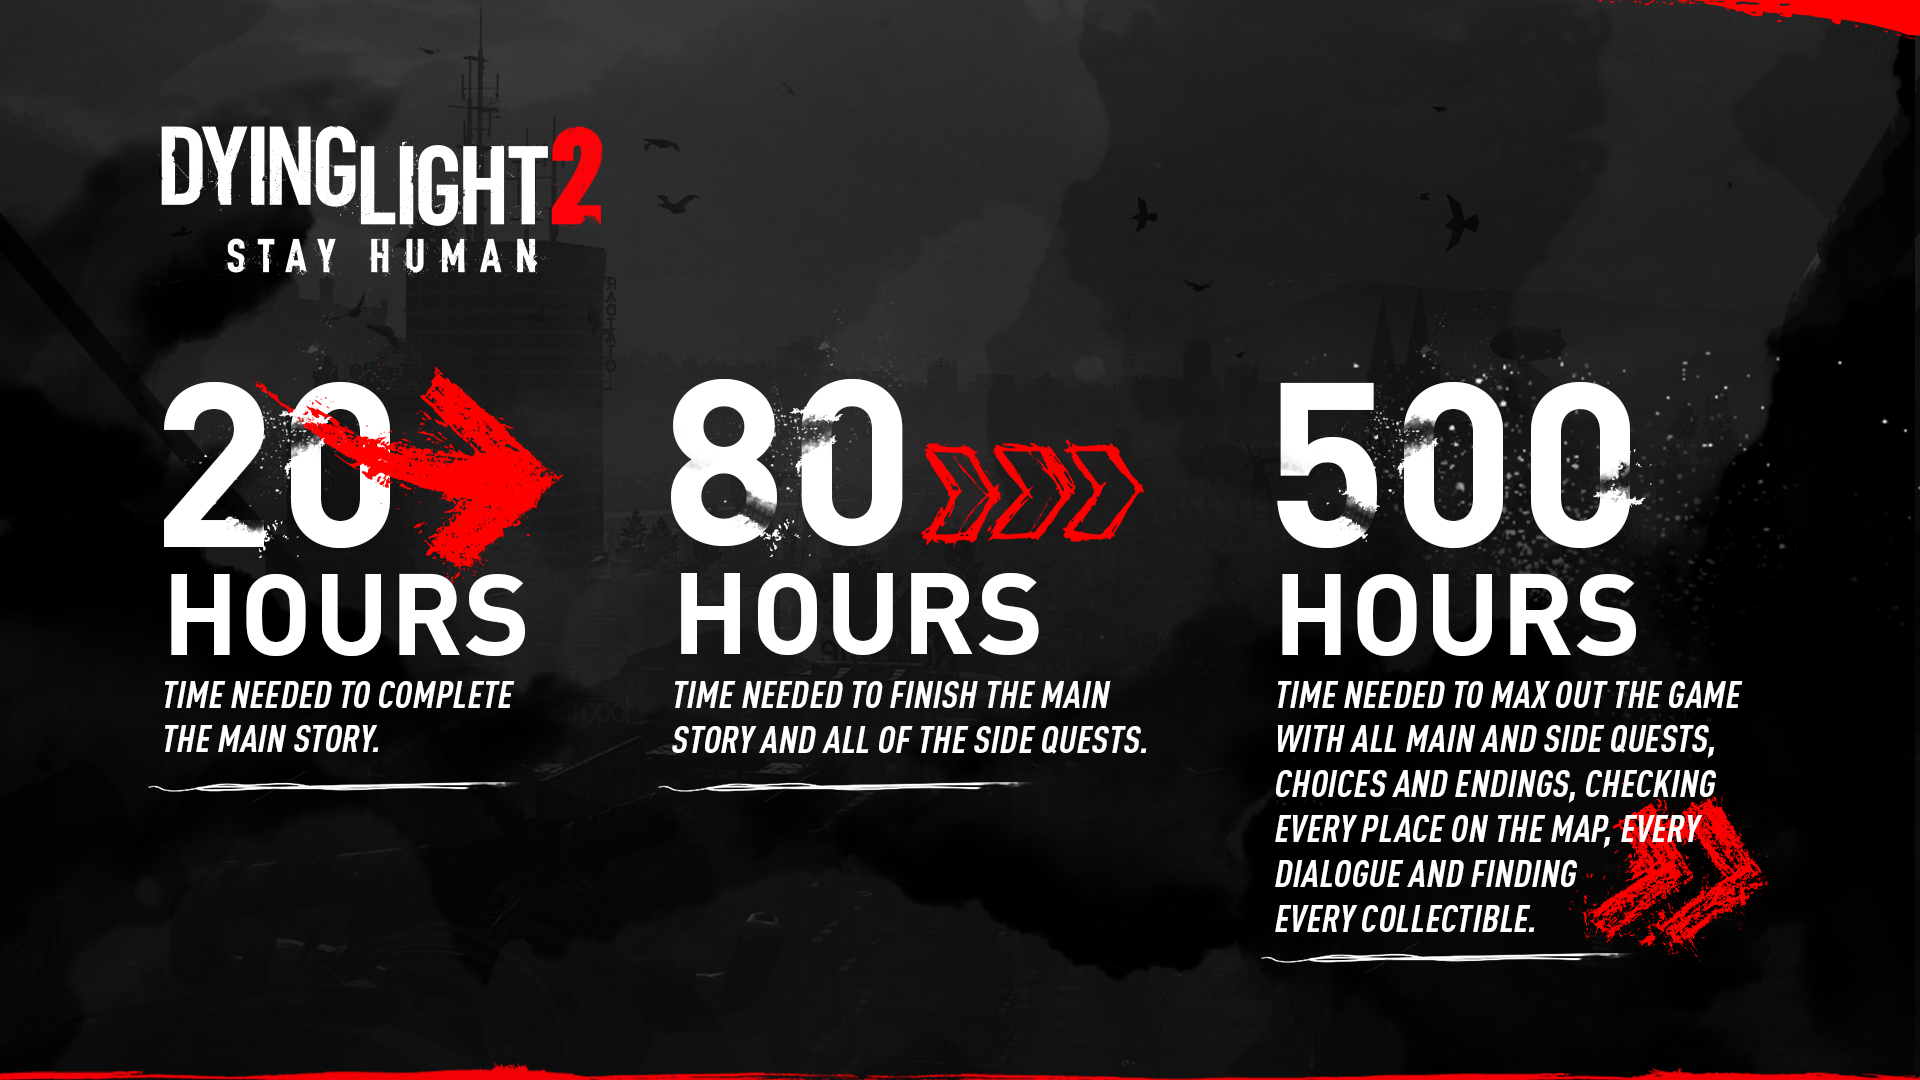 Прохождение сюжета Dying Light 2 займет 20 часов, остальные 480 — на изучение мира и вариативность